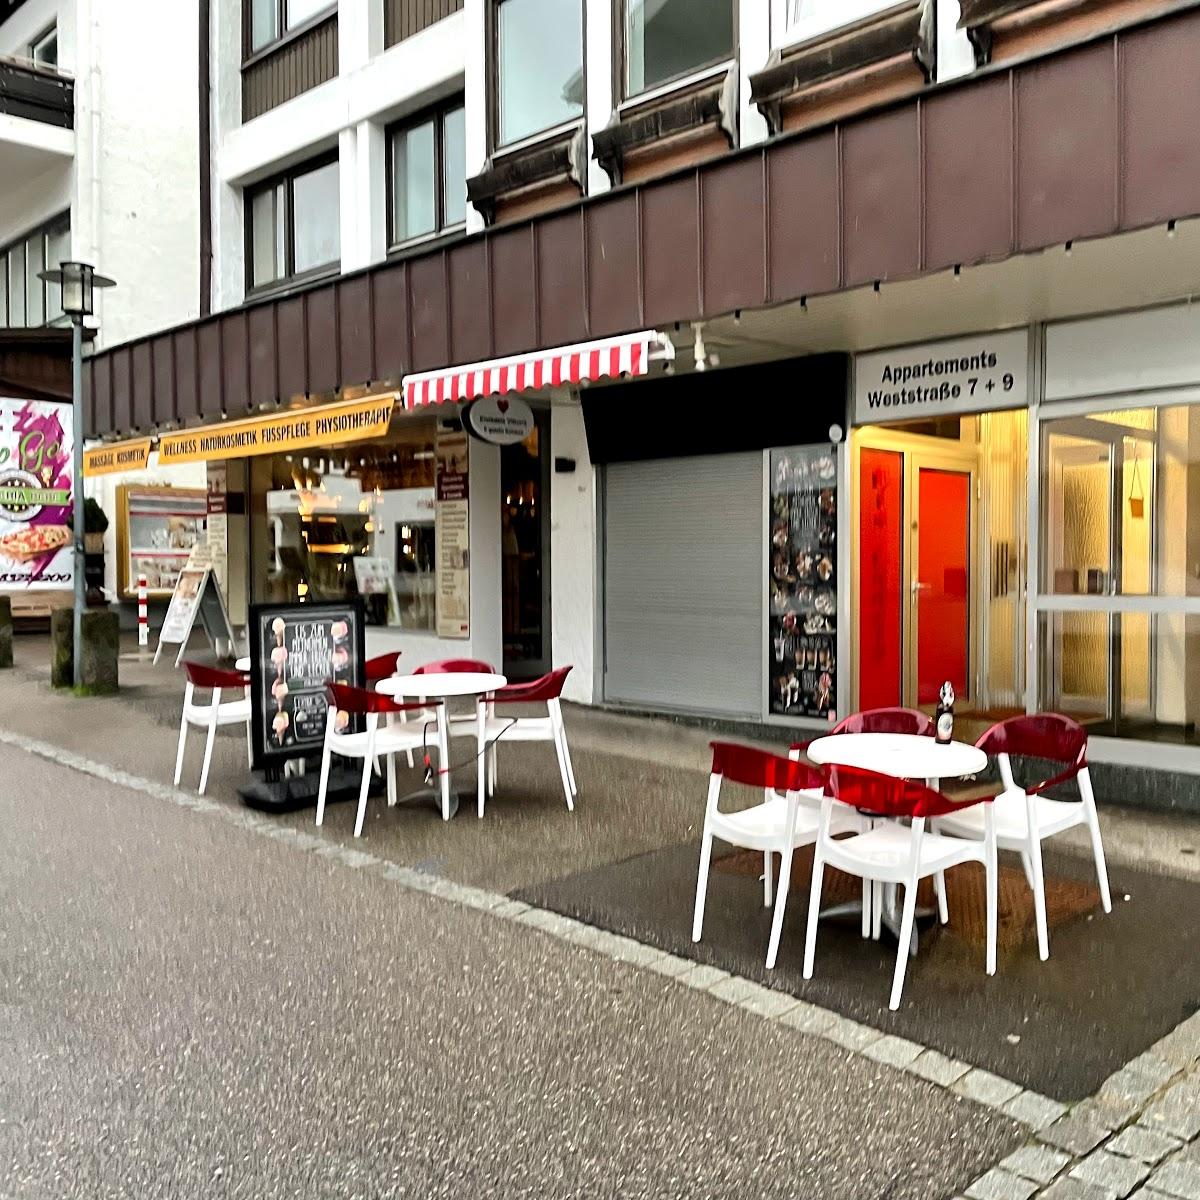 Restaurant "Eis Vittoria" in Oberstdorf